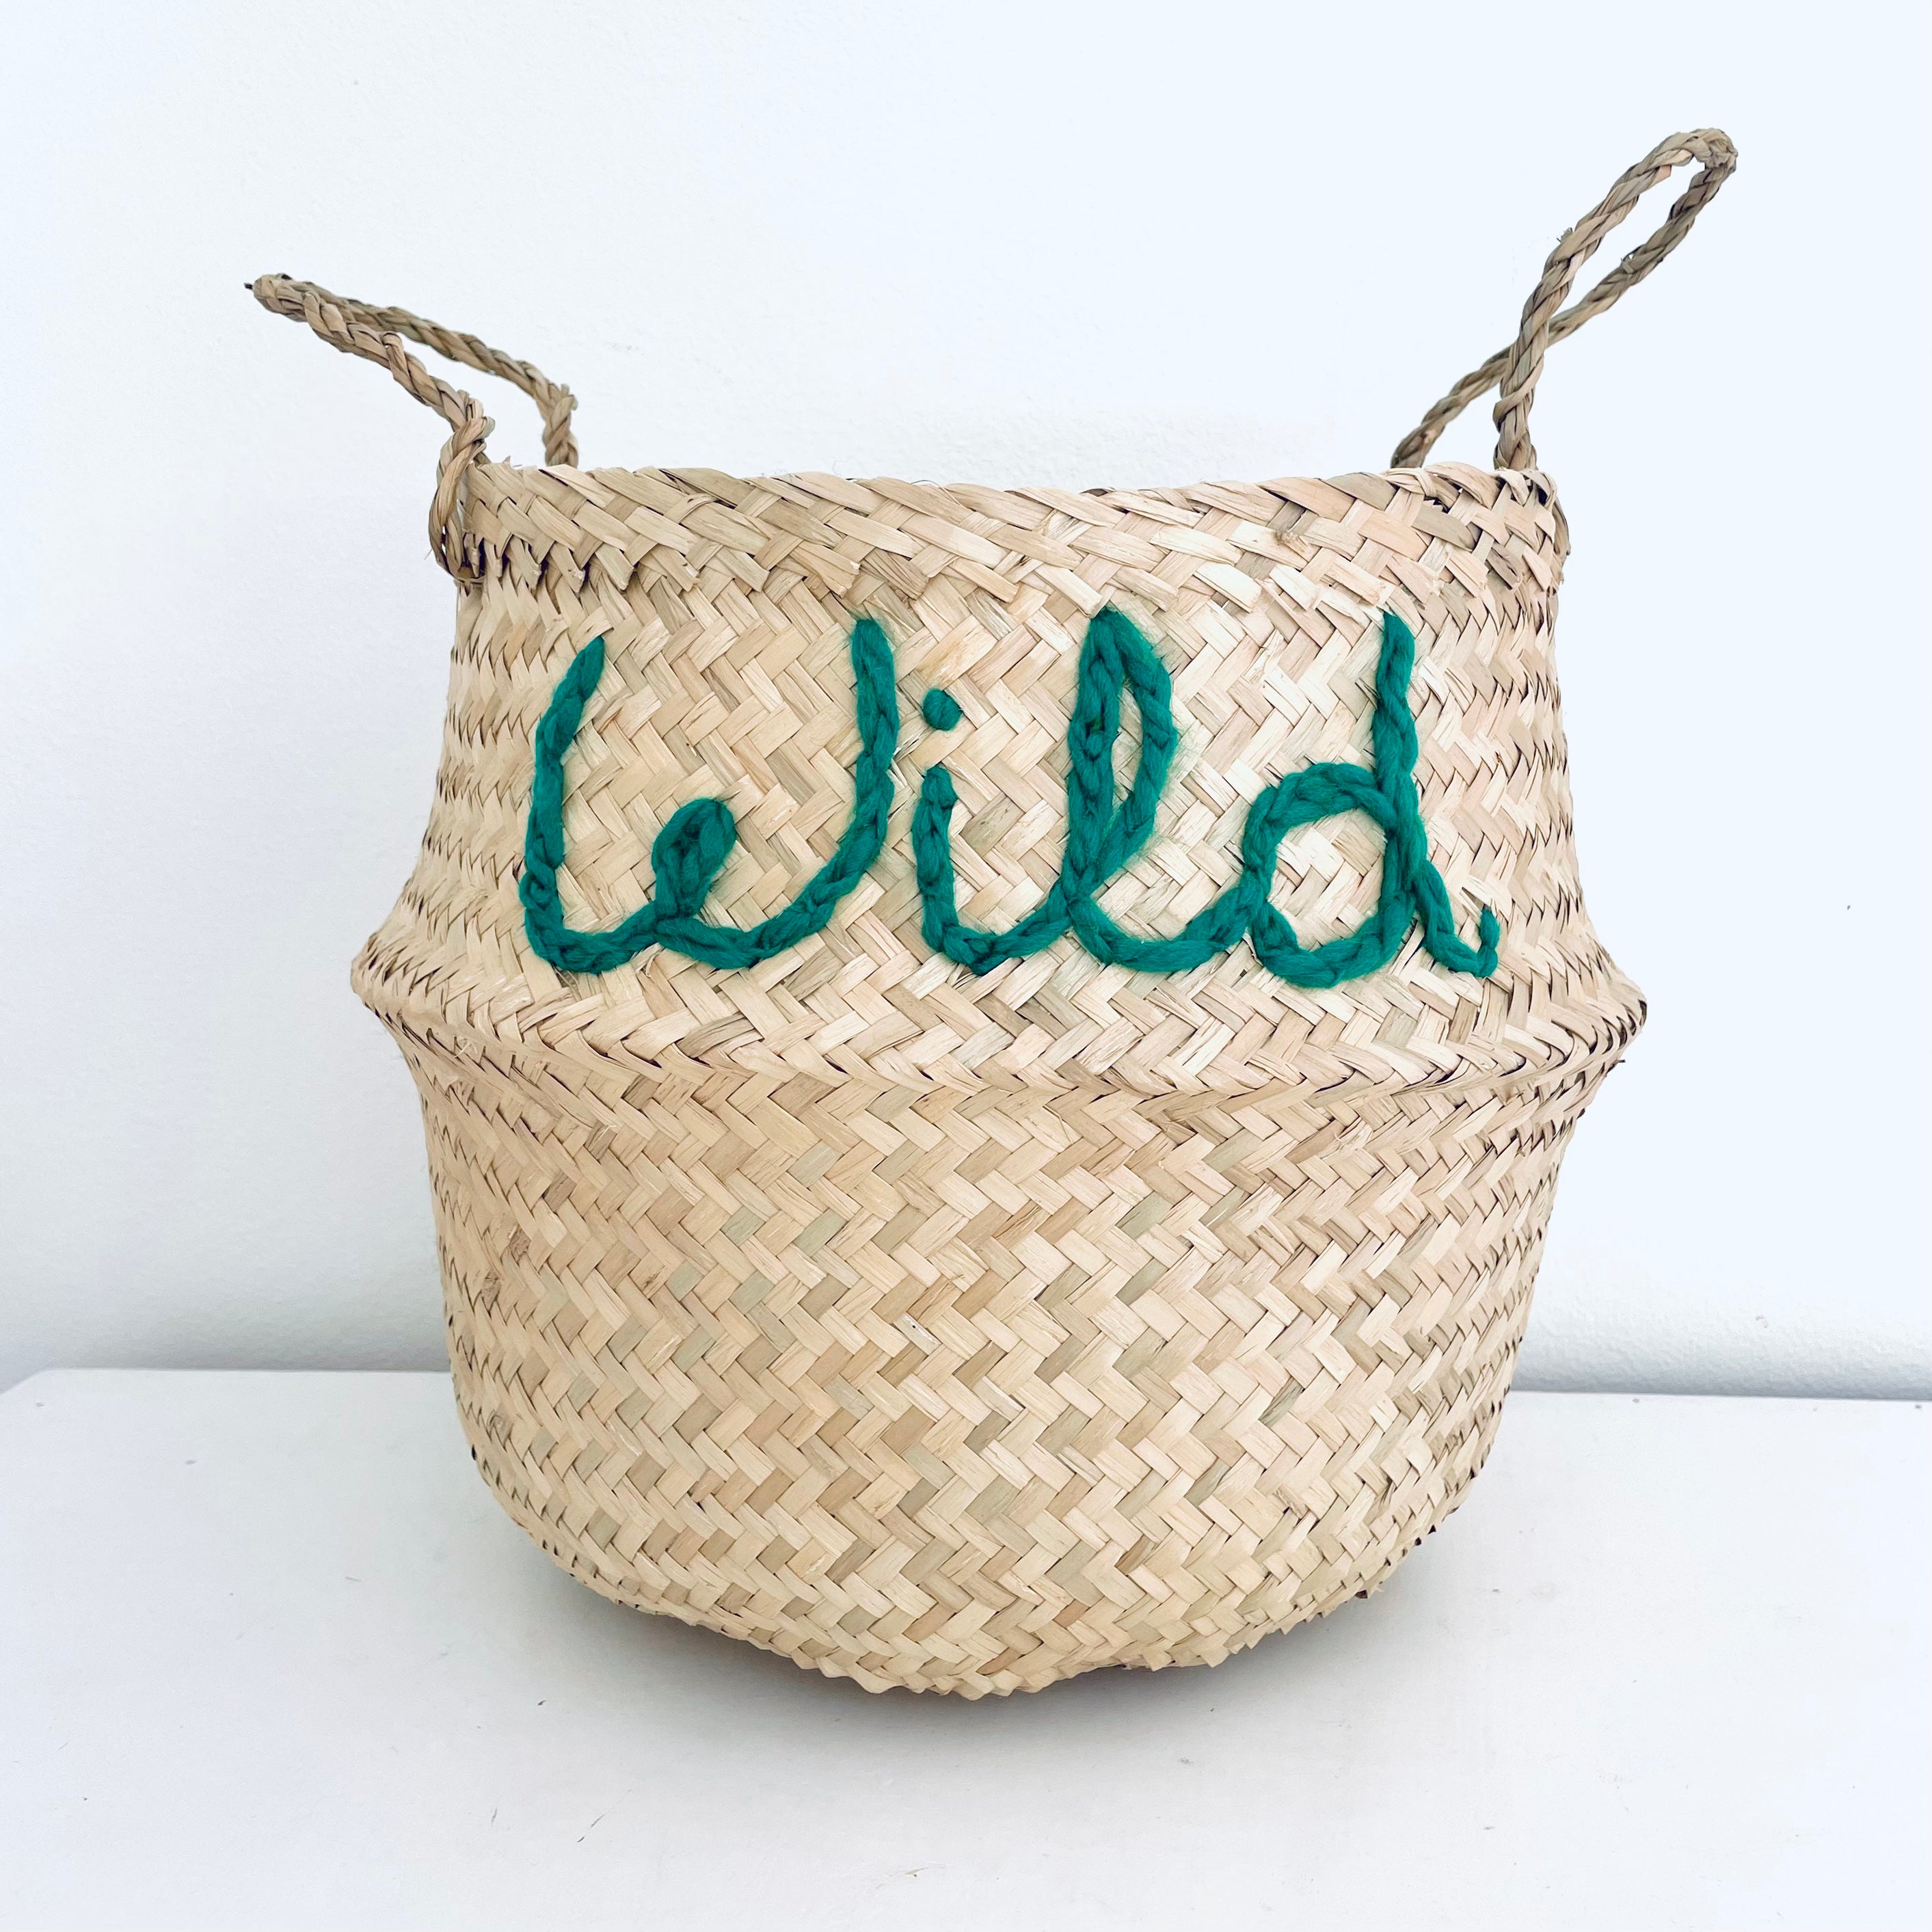 Wild basket - Large